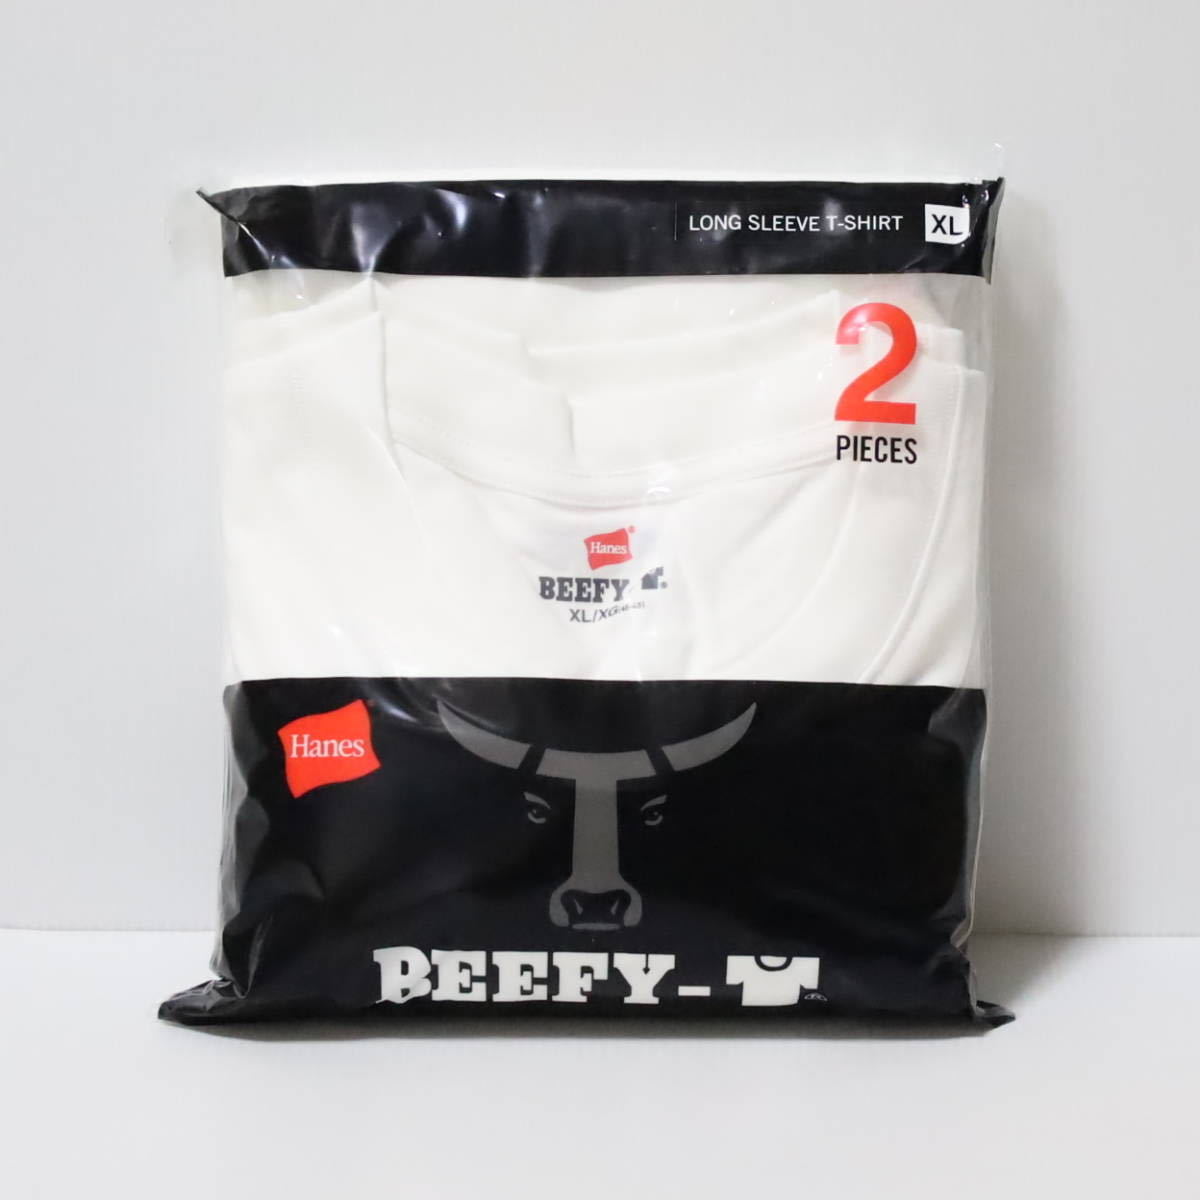 [ヘインズ] ビーフィー ロングスリーブTシャツ BEEFY-T 綿100% 肉厚生地 H5186 メンズ ホワイト XL 2枚組_画像3